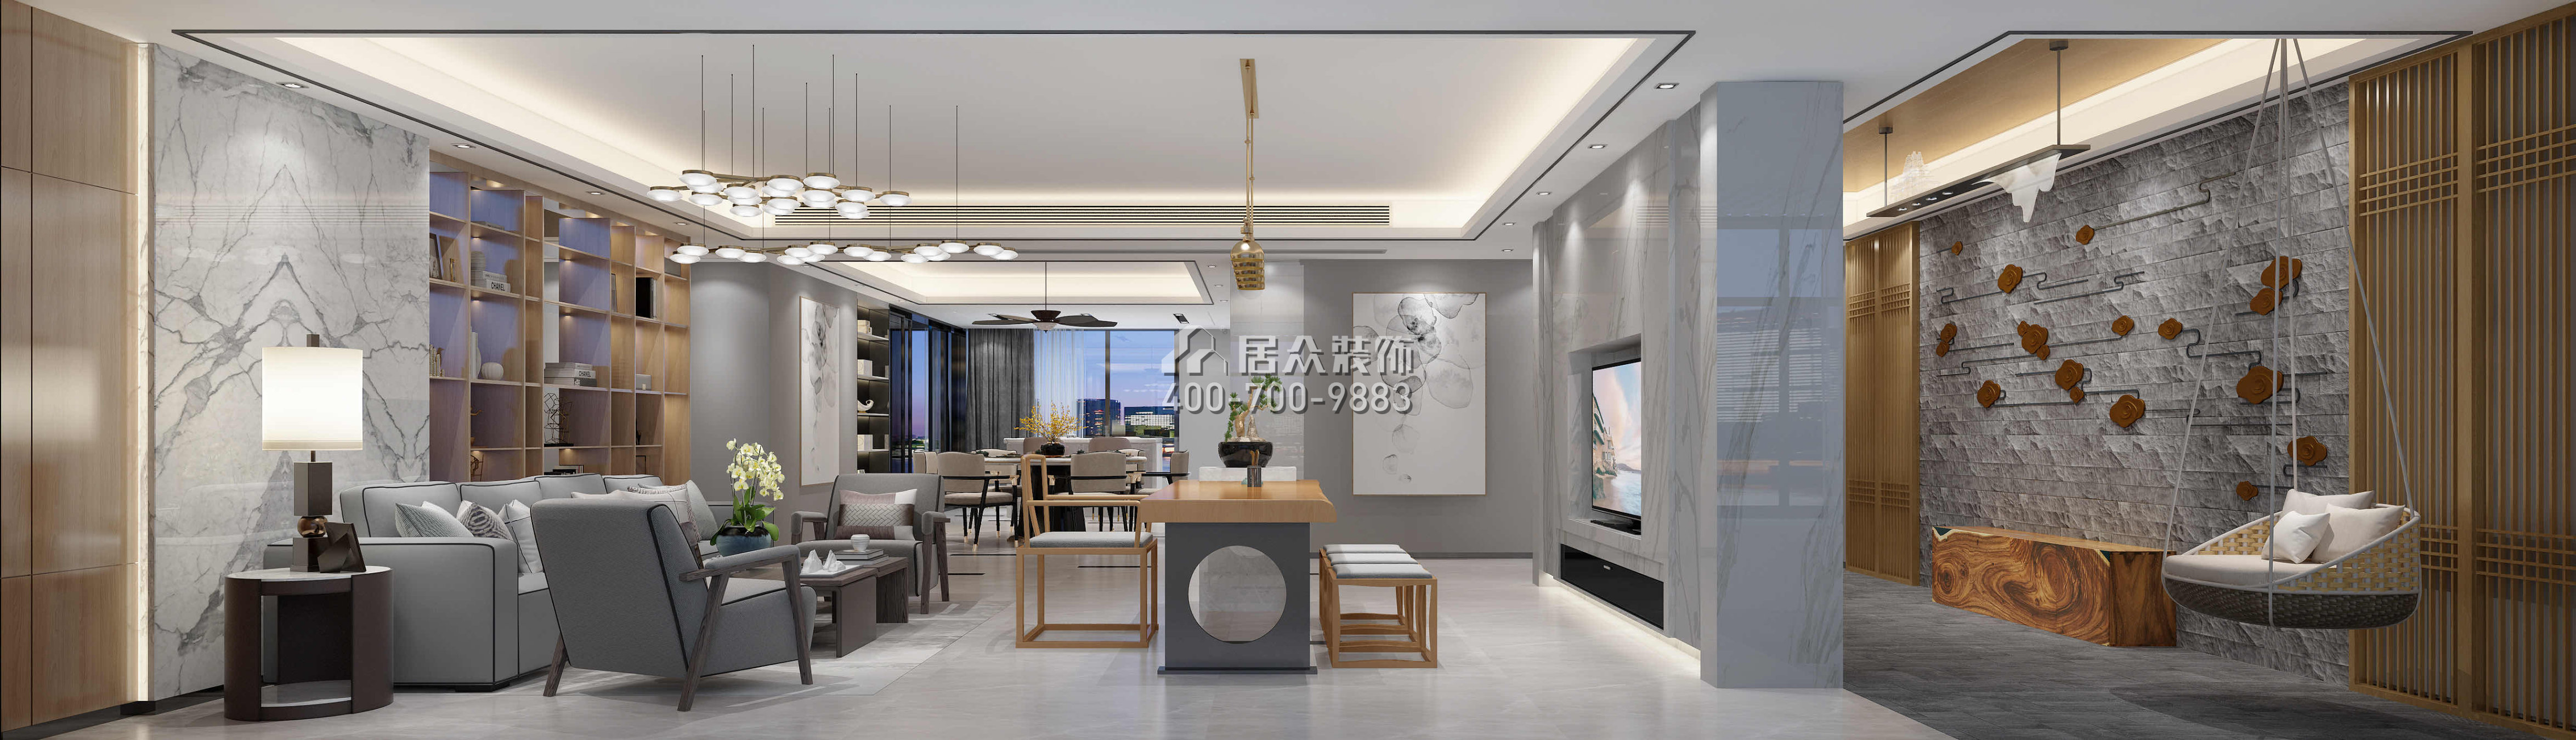 五洲花城300平方米现代简约风格平层户型客厅开元官网效果图